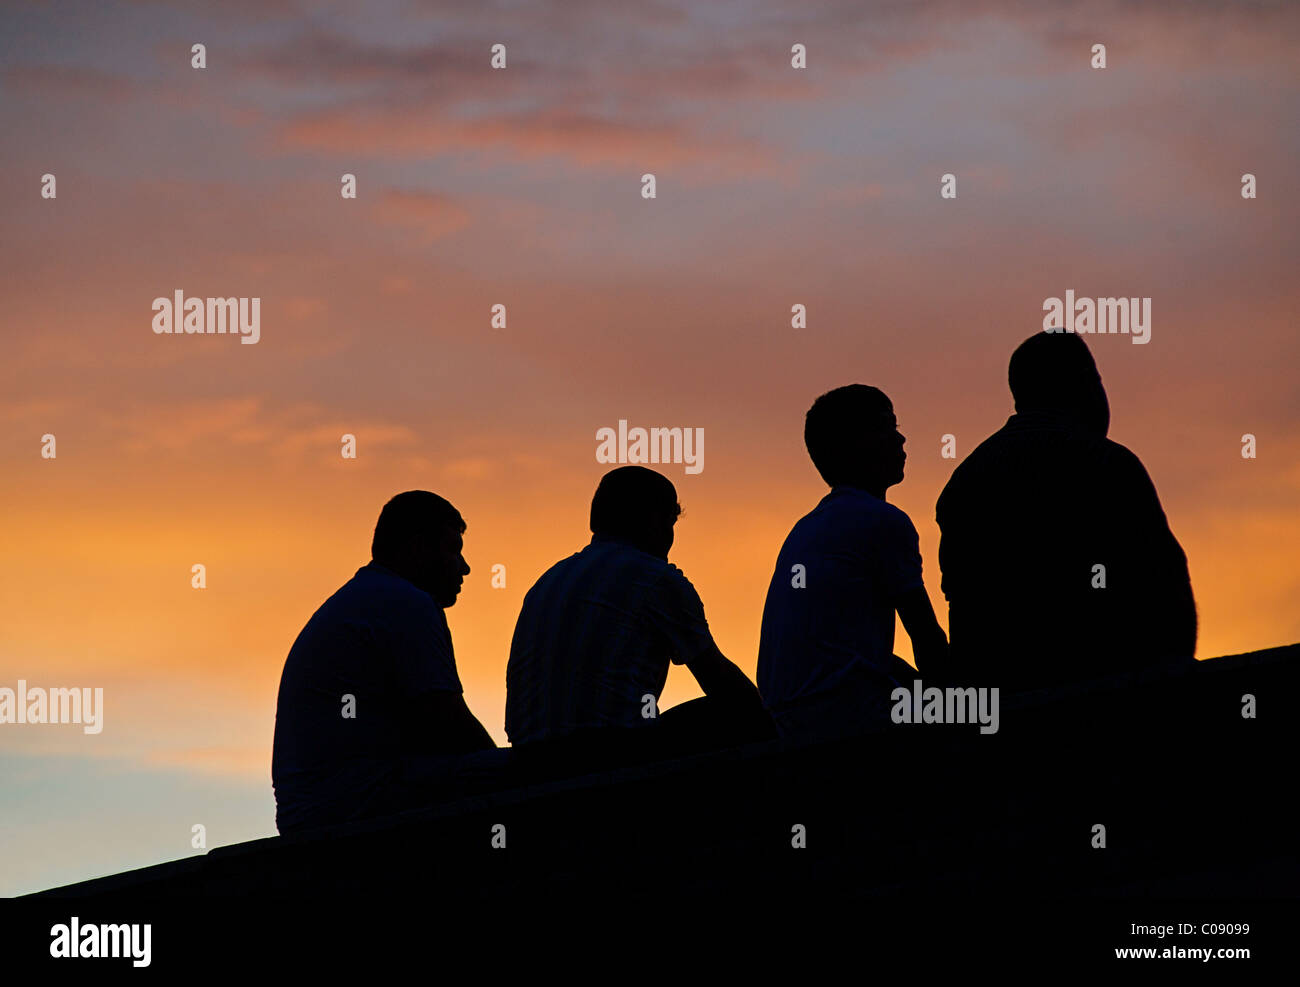 Groupe de 4 hommes Uzbeki silhouetté contre le ciel au crépuscule, Boukhara, Ouzbékistan Banque D'Images